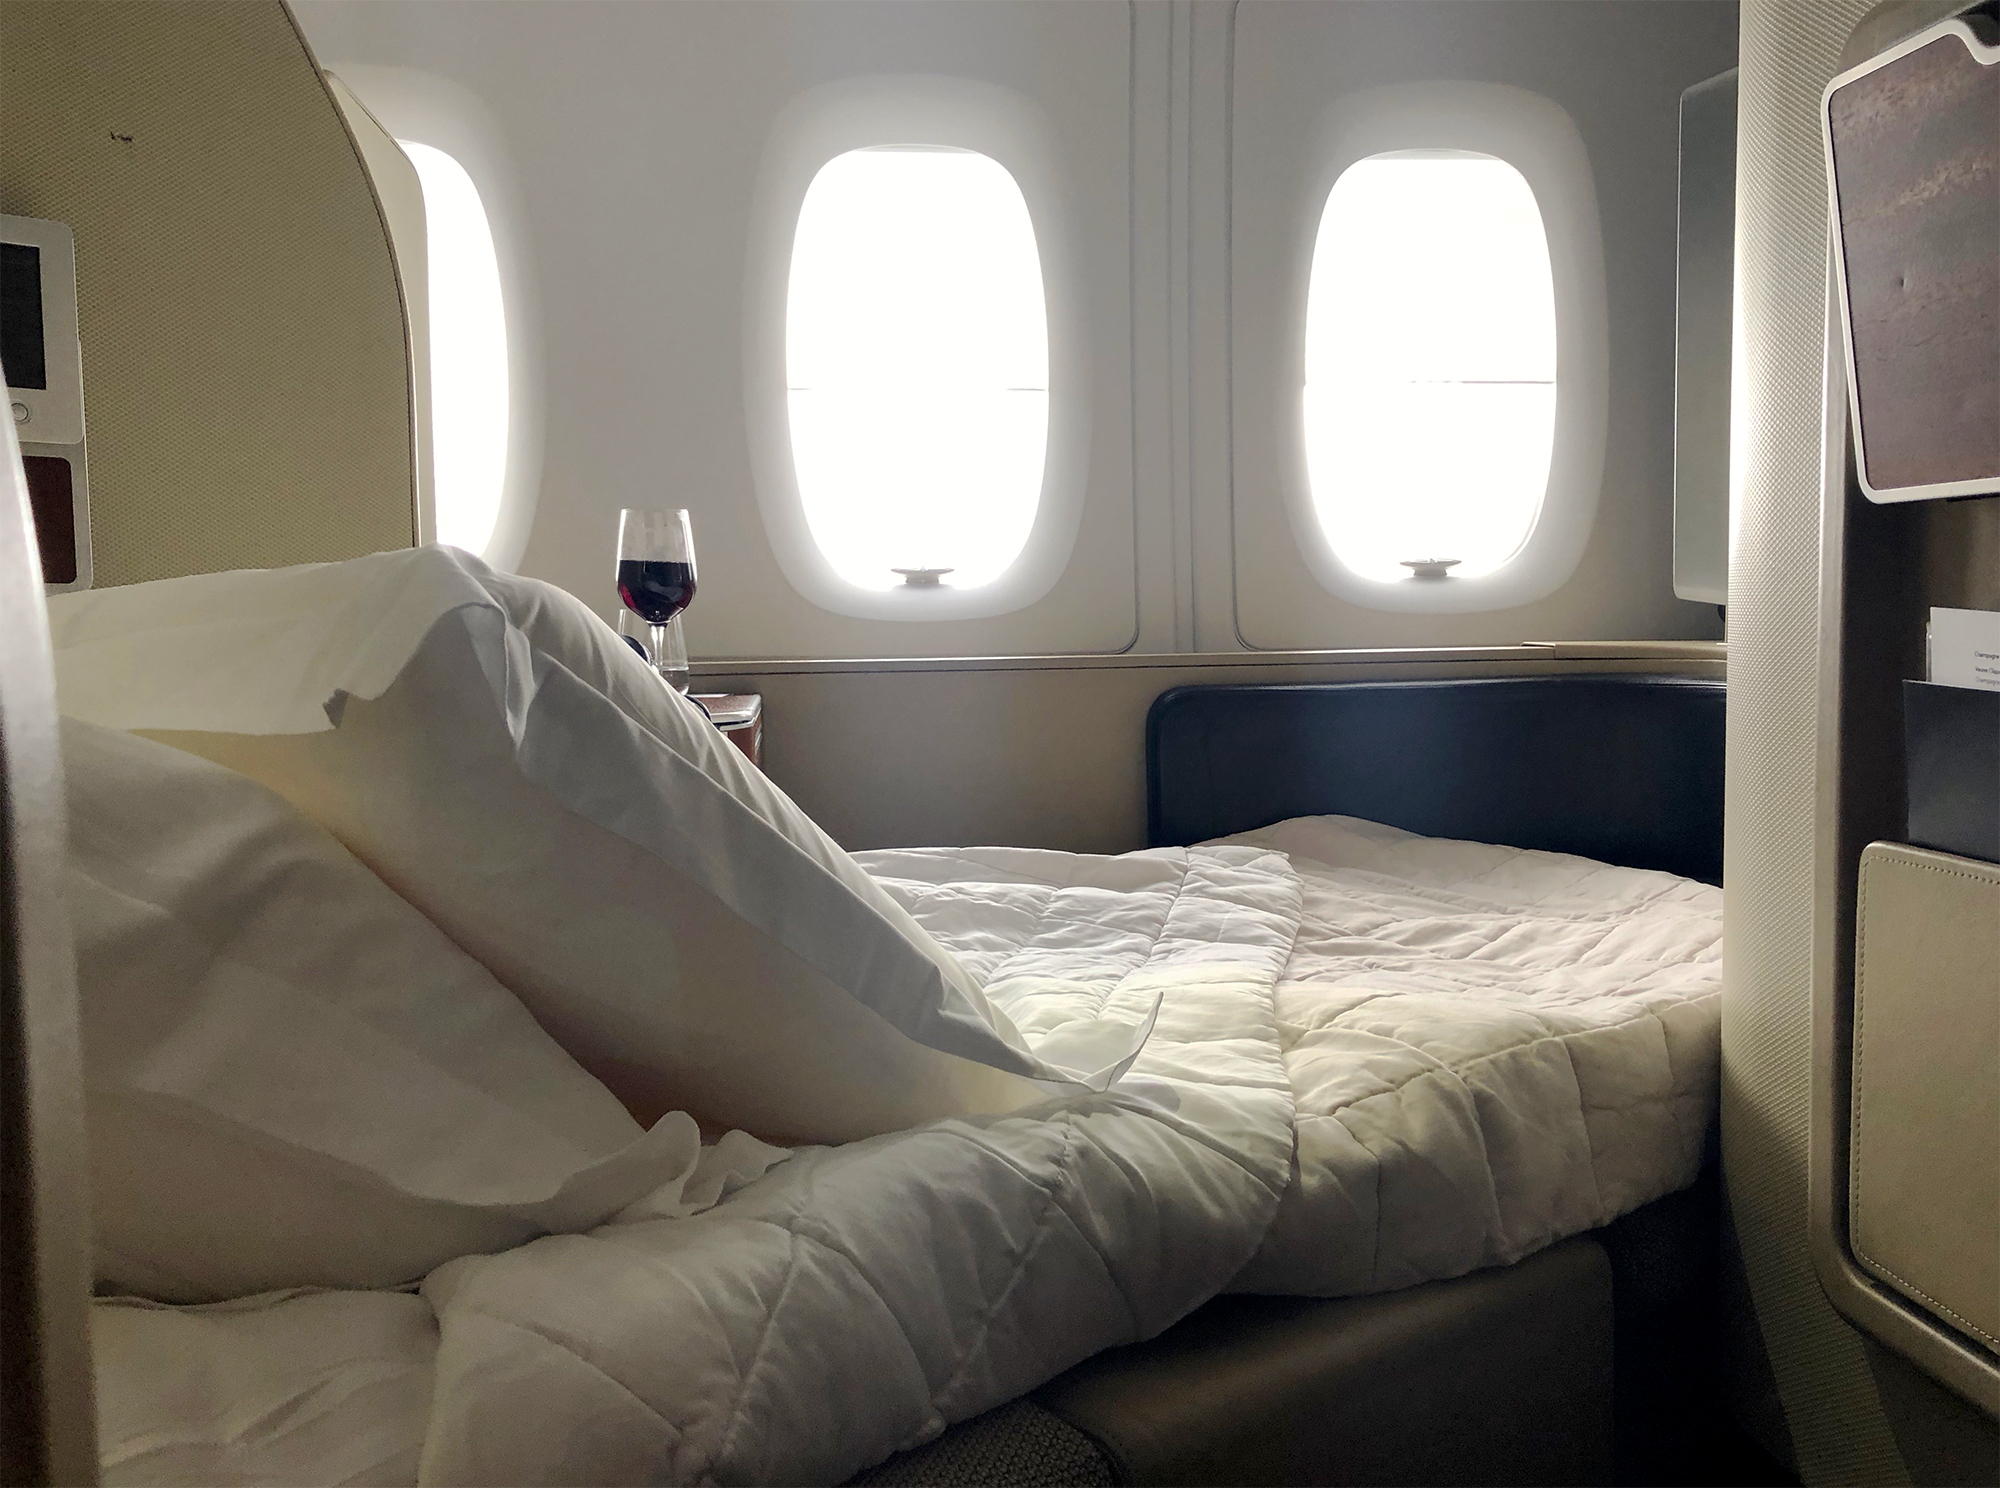 Qantas A380 First Class Bed